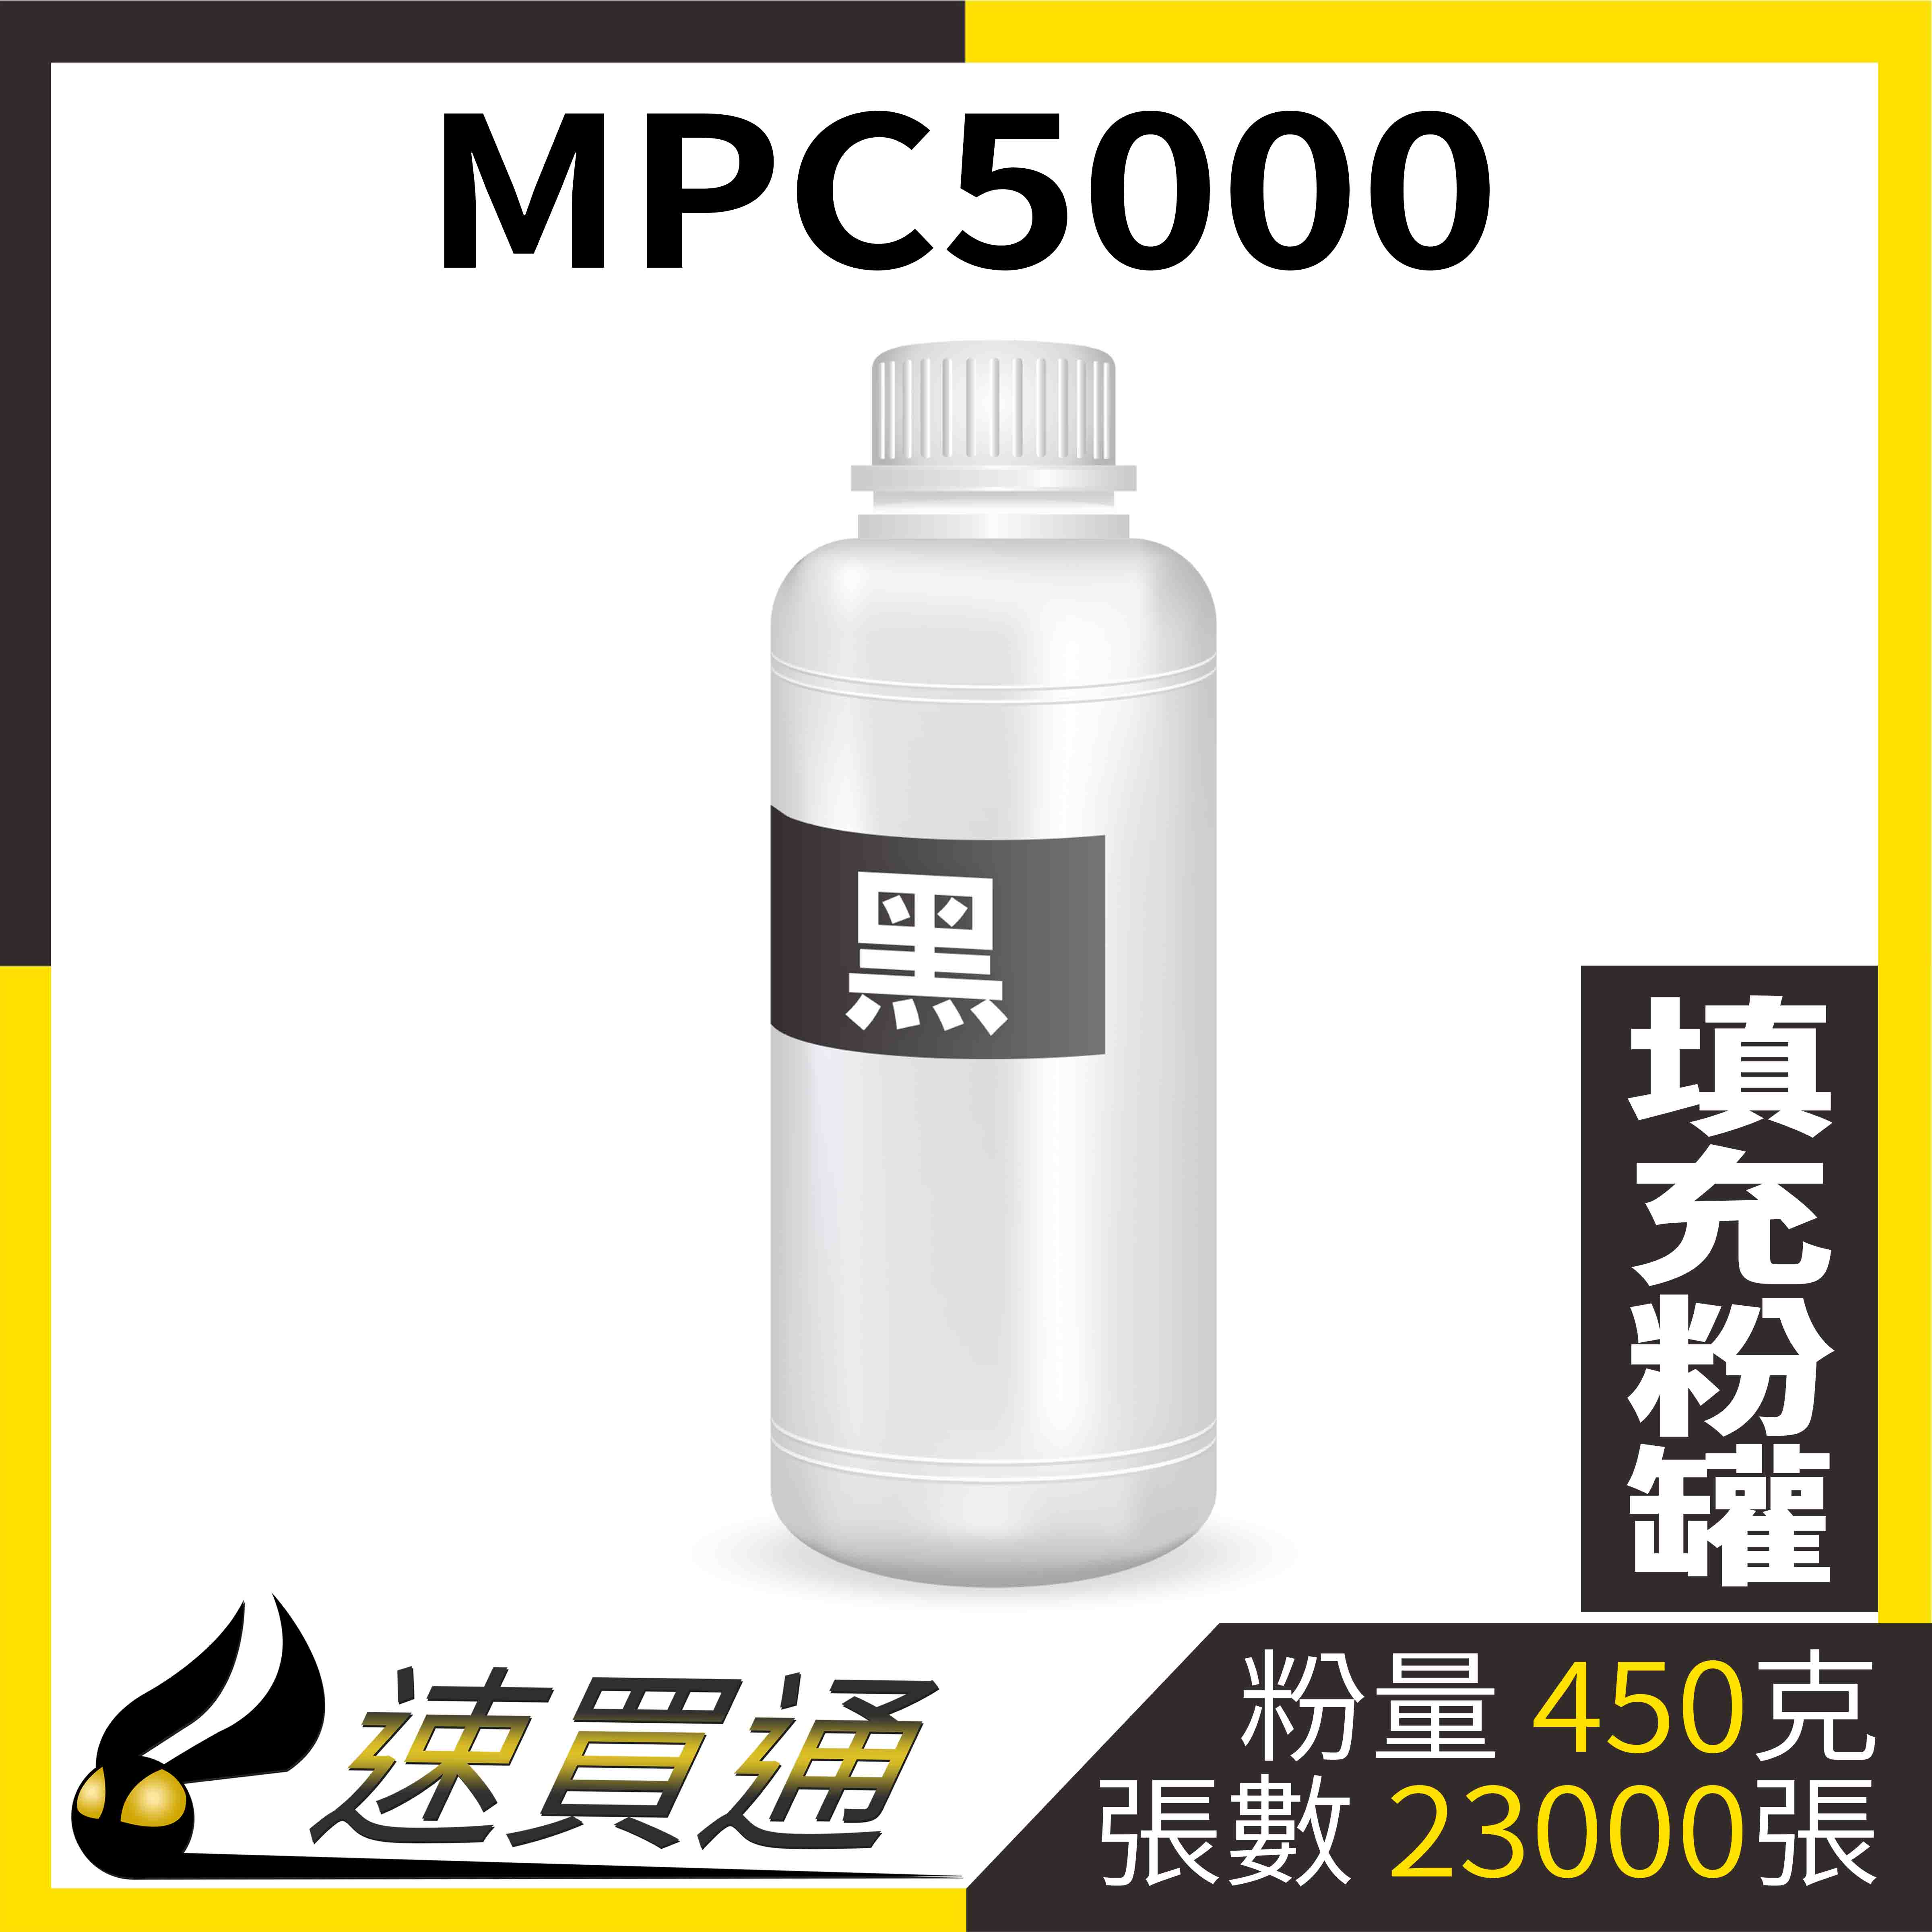 【速買通】RICOH MPC5000 黑 填充式碳粉罐